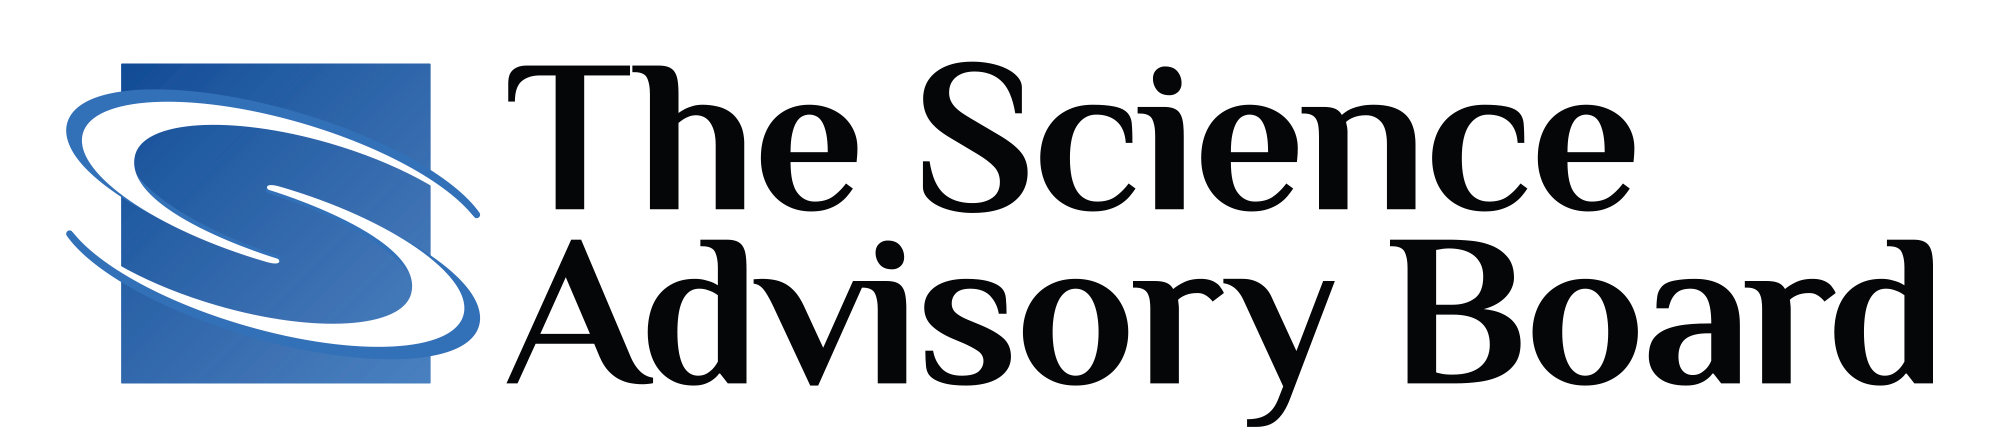 Science Advisory Board Logo